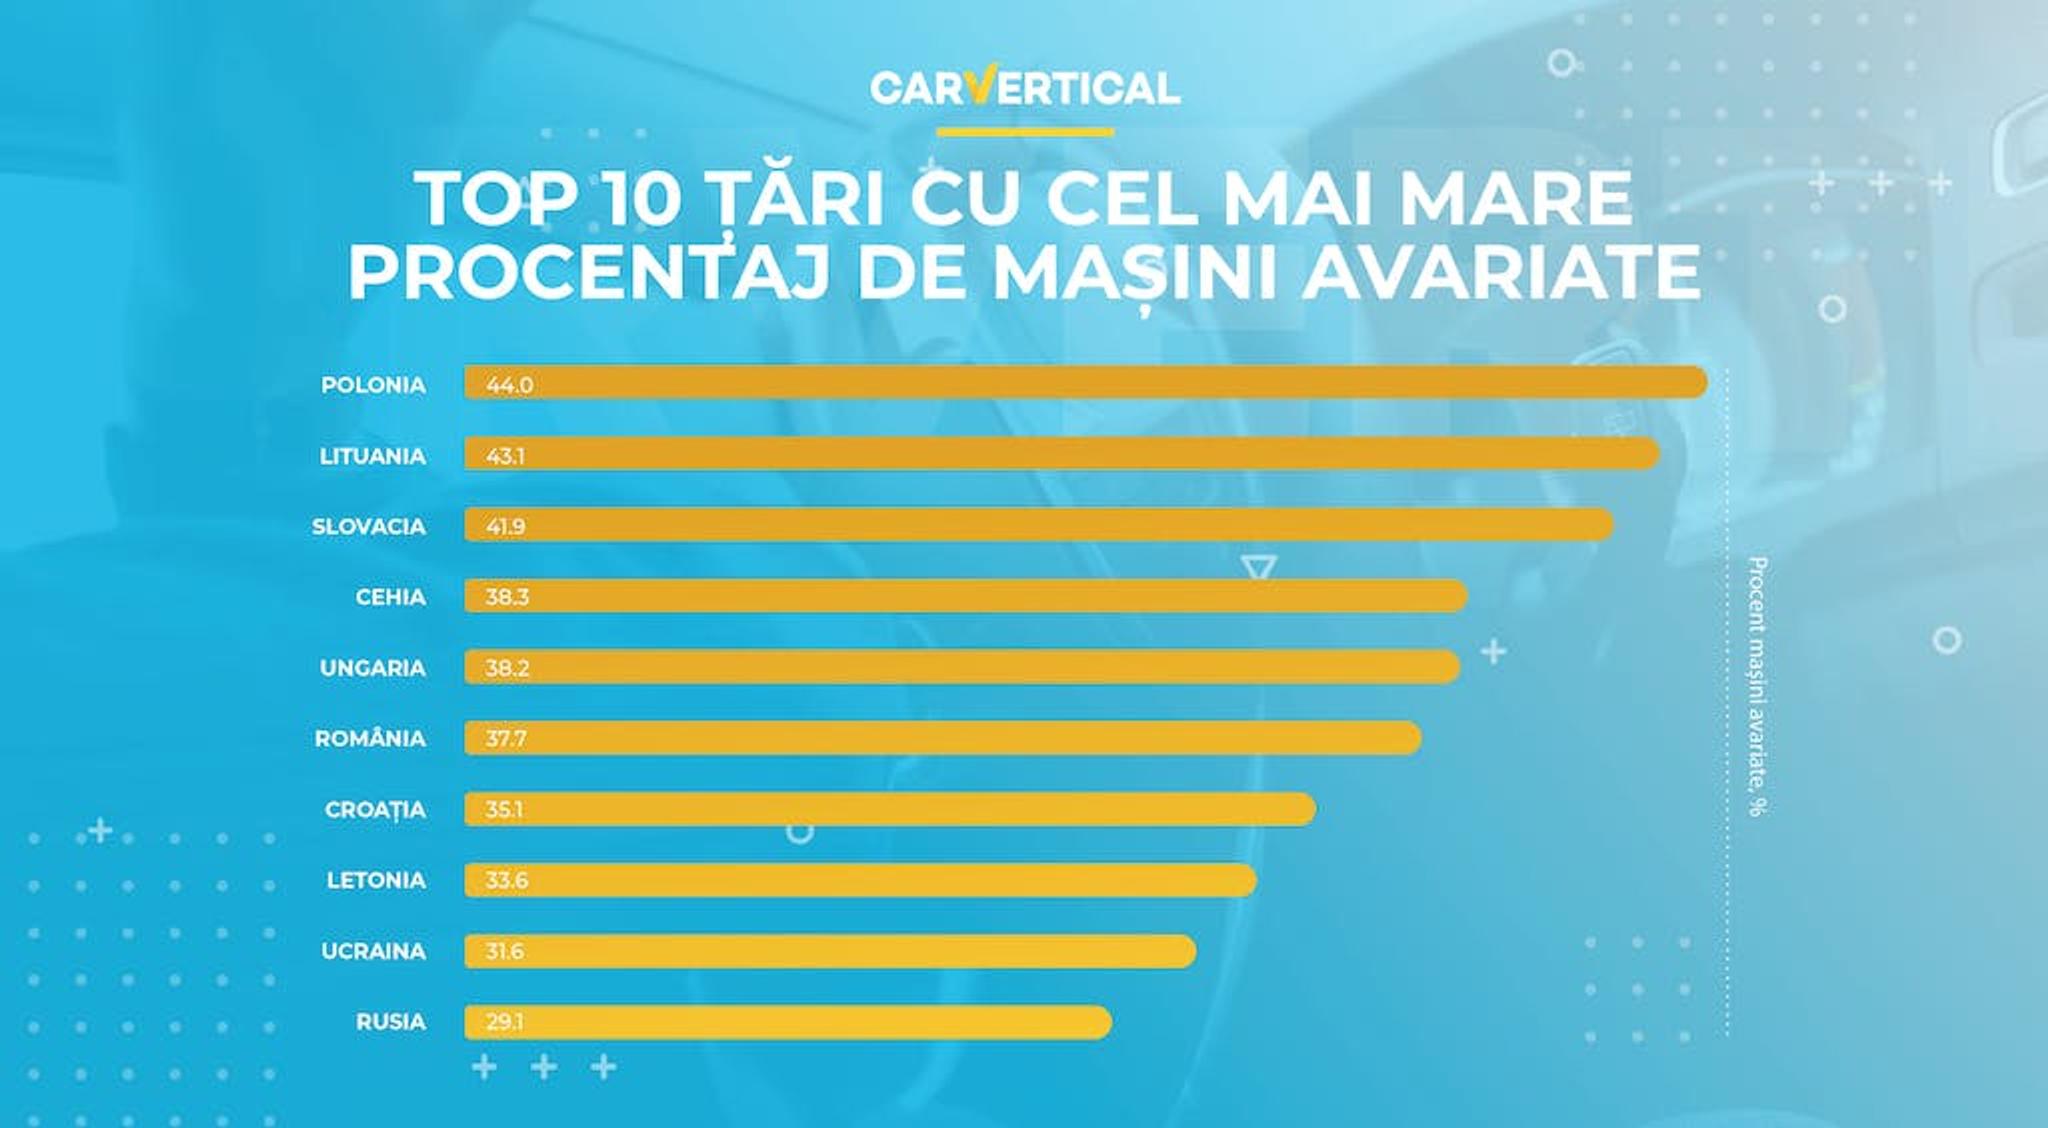 Top 10 tari cu cel mai mare procentaj de masini avariate